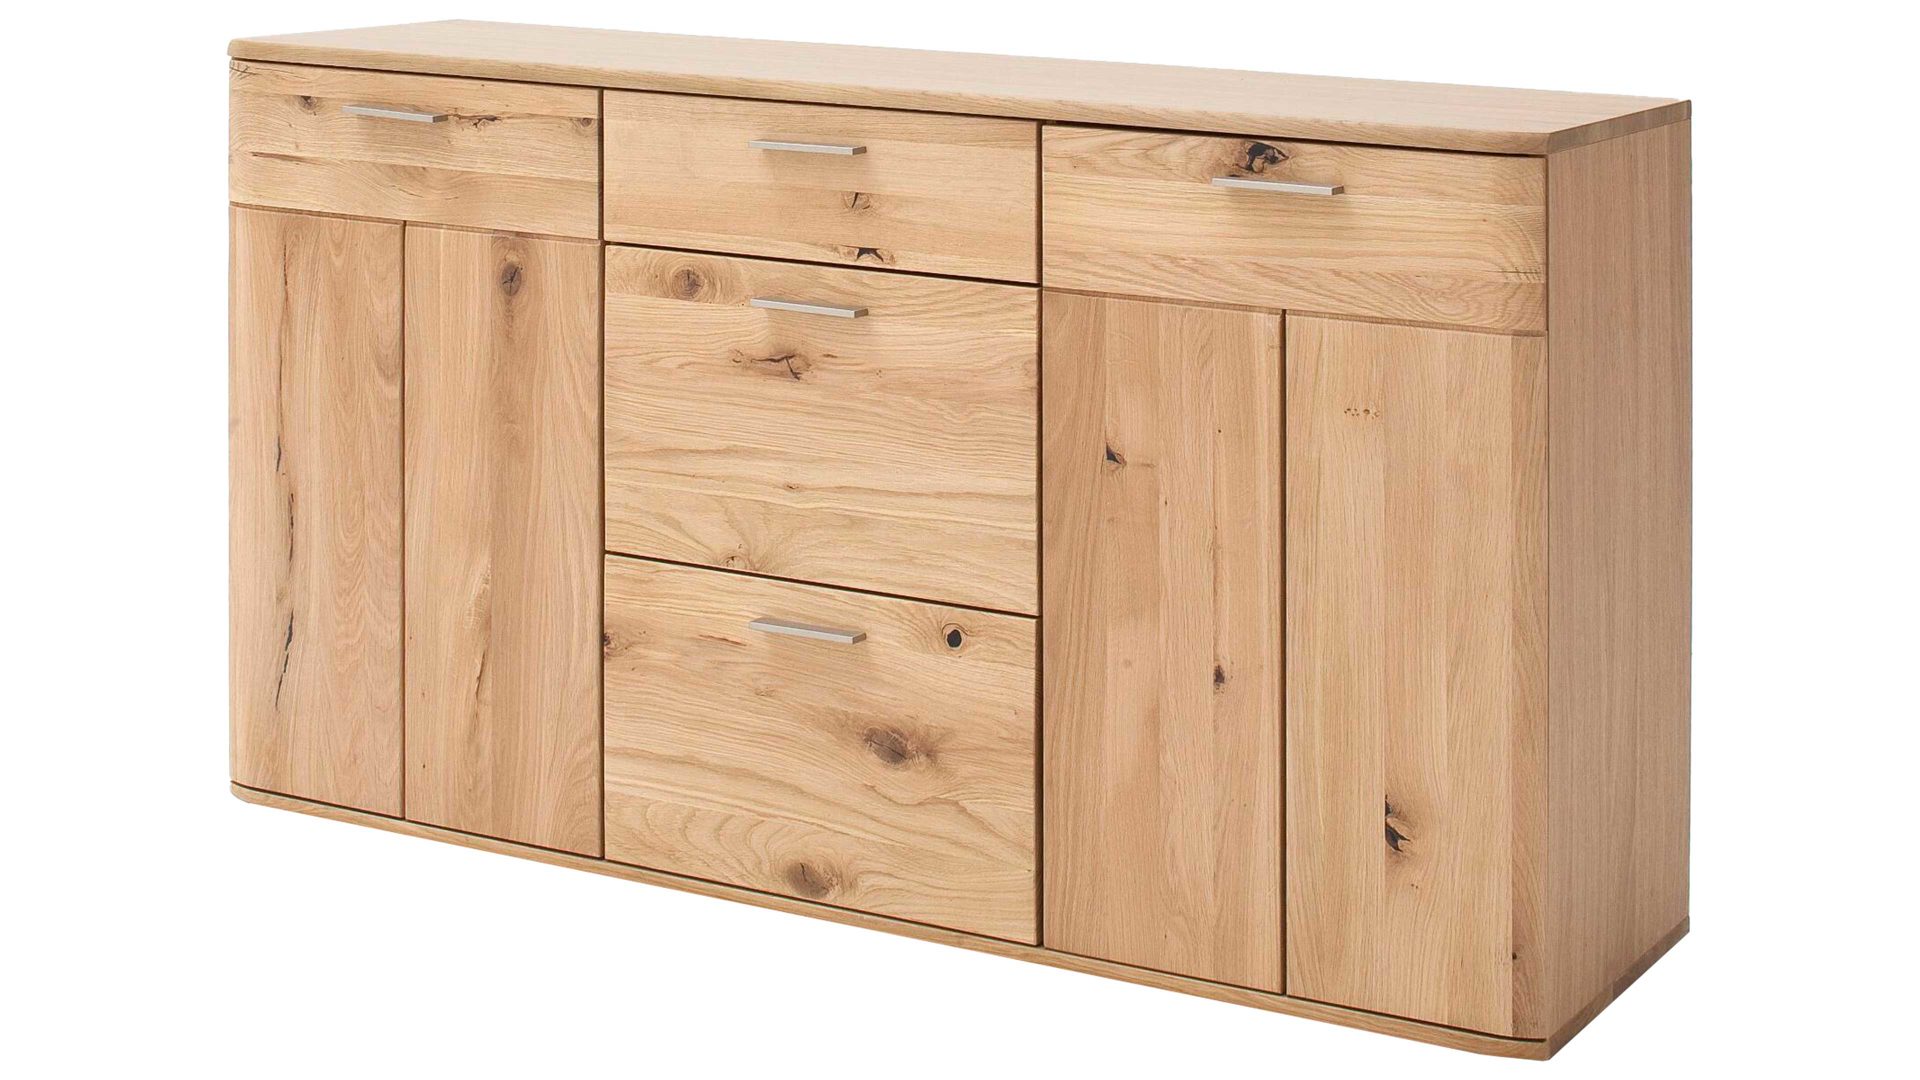 Kombikommode Mca furniture aus Holz in Holzfarben Kombikommode Nilo biancofarbene Balkeneiche – zwei Türen, drei Schubladen